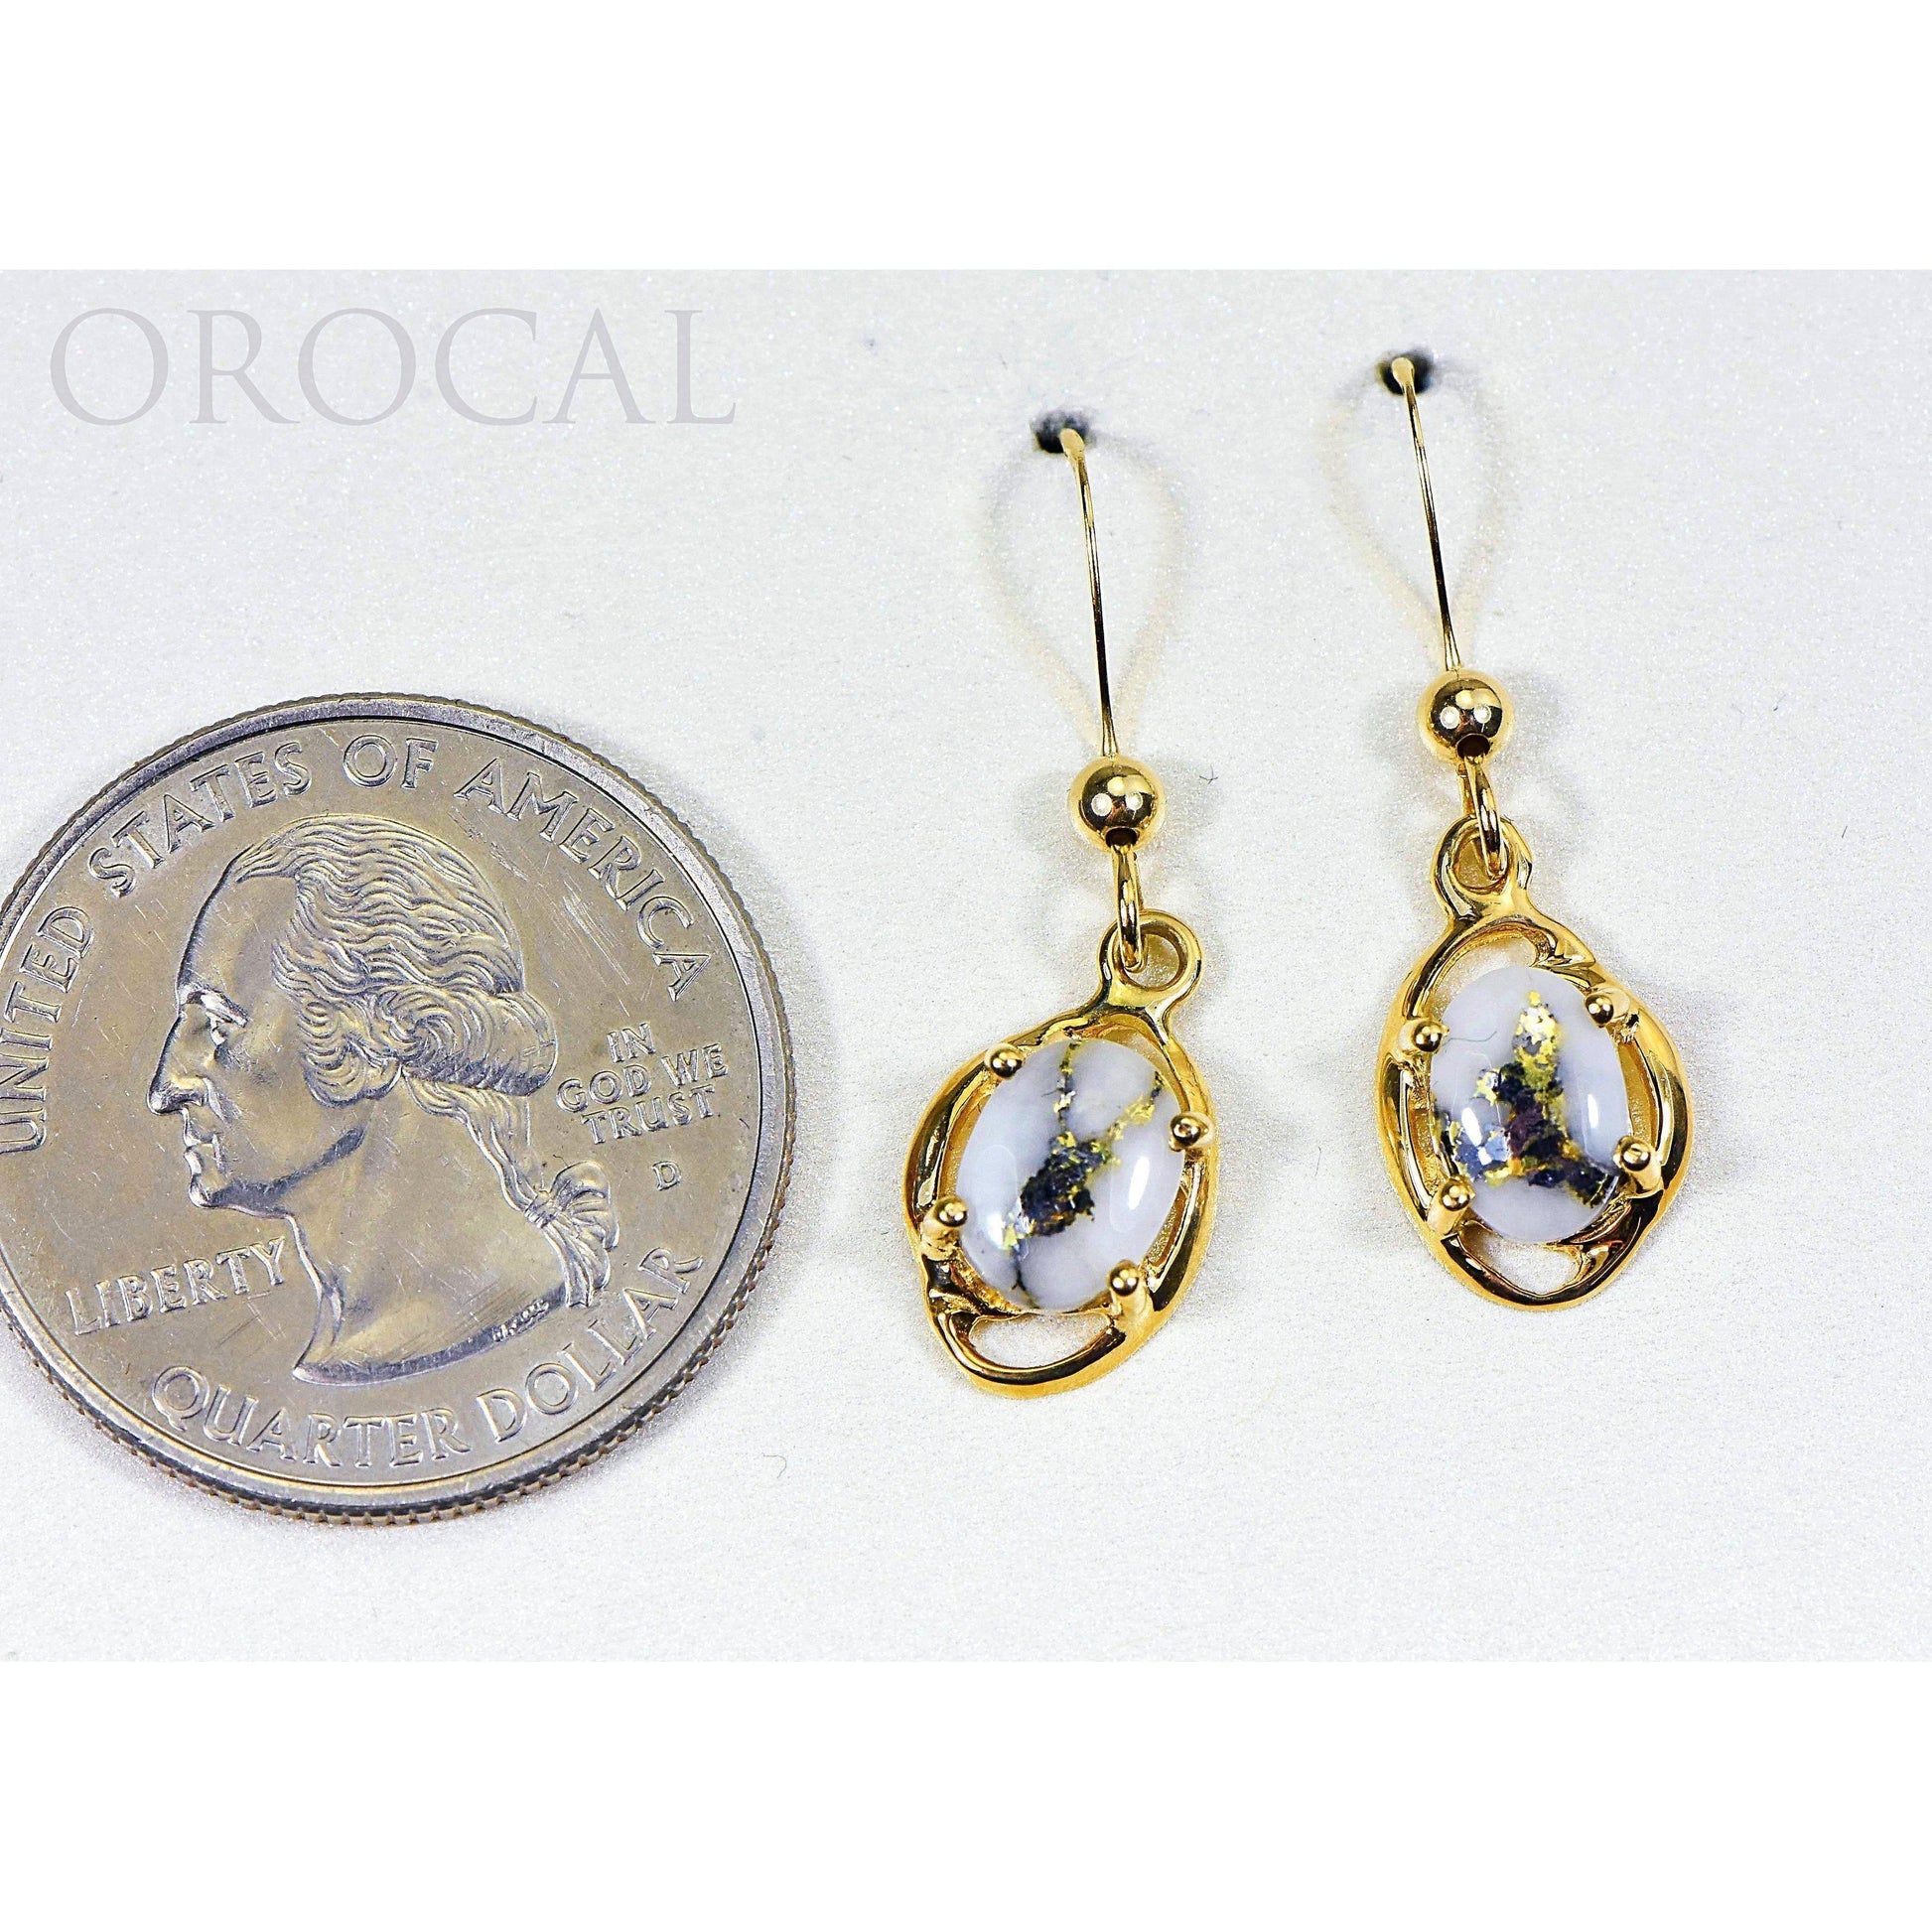 Orocal Gold Quartz Earrings Dangling EN805XSQ/WD-Destination Gold Detectors